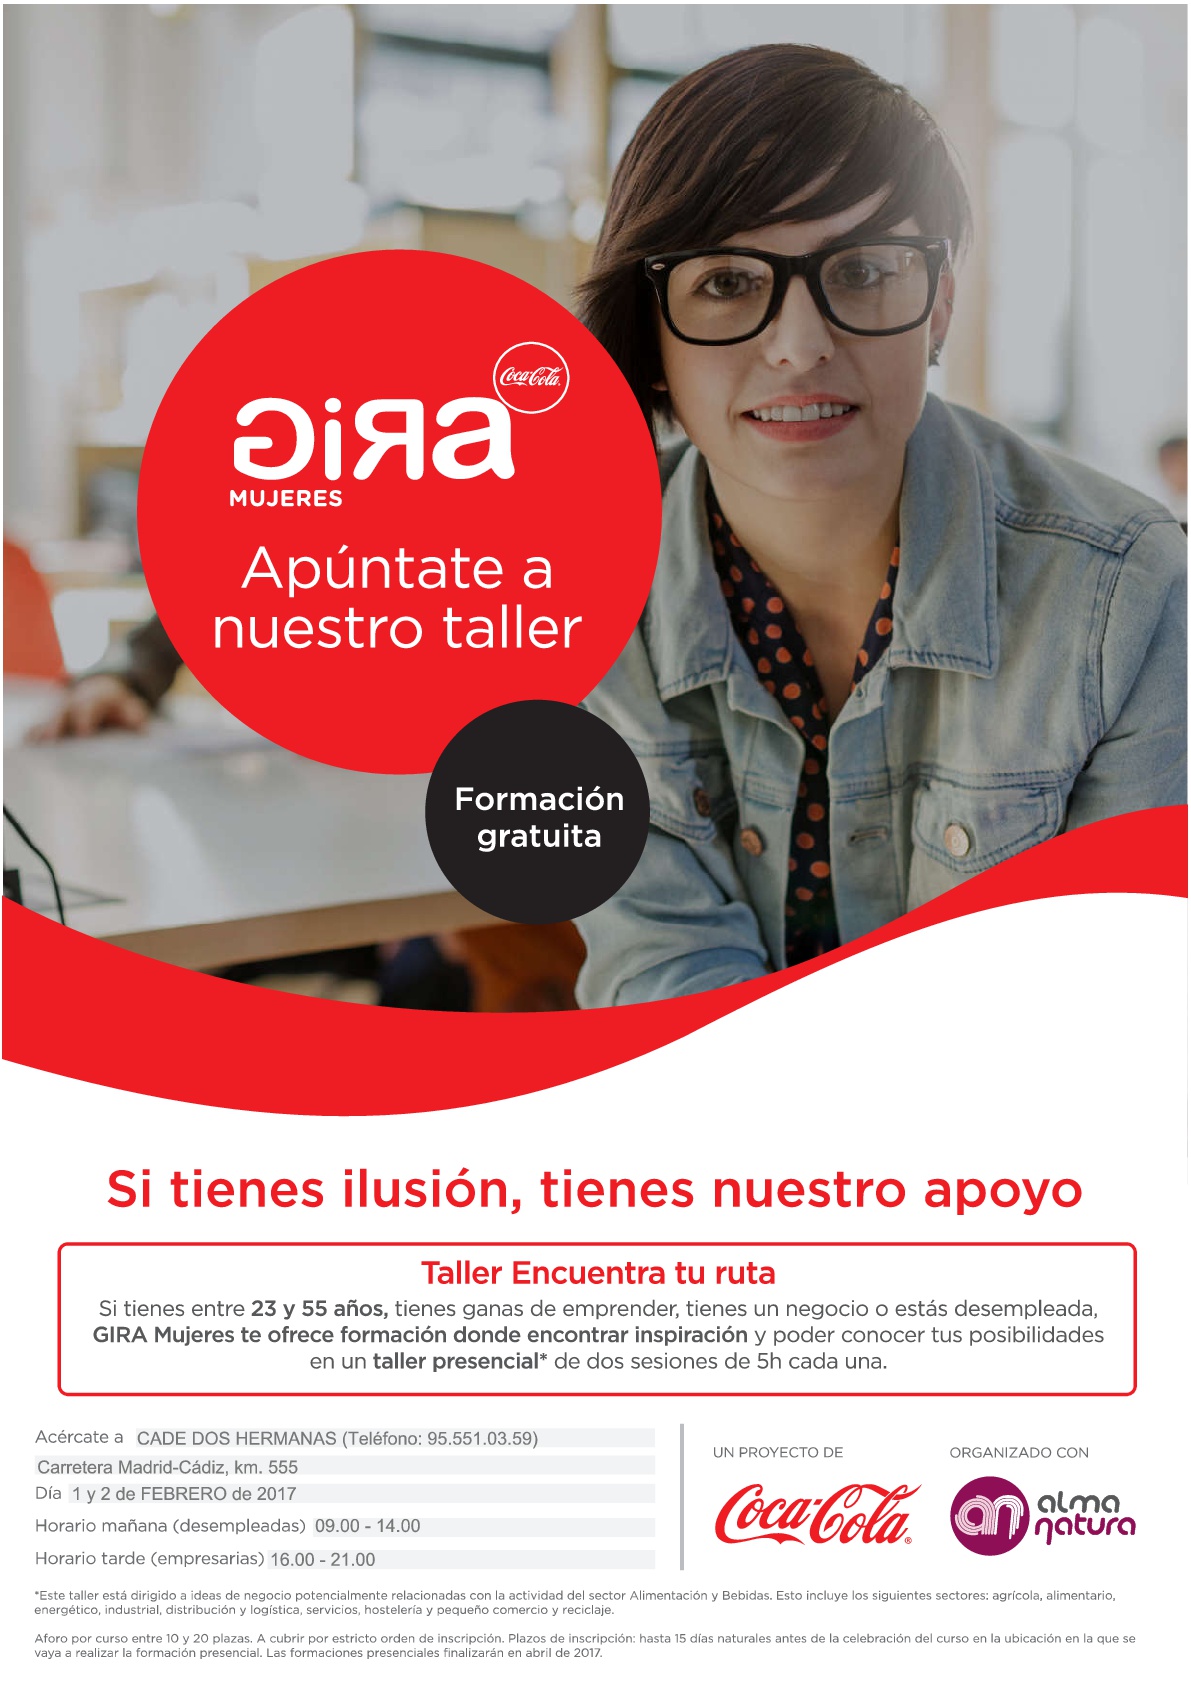 Gira Mujeres Coca cola - Andalucía Emprende, Fundación 